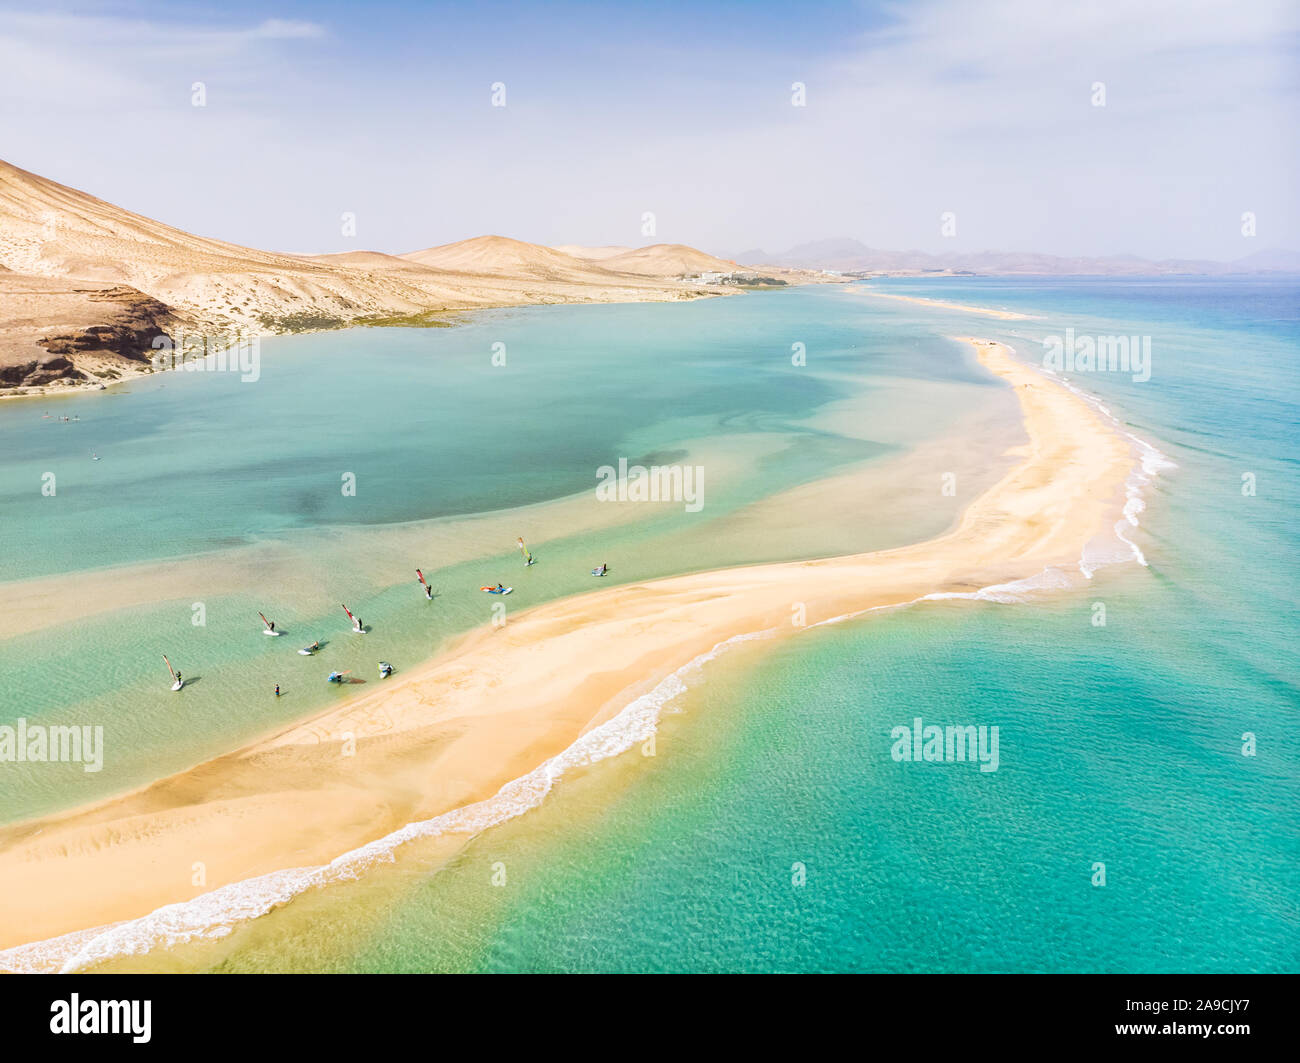 Luftaufnahme von Strand in Fuerteventura Insel bei Windsurfern lernen Windsurfen in blau türkis Wasser im Sommer Urlaub Ferien, Canary isl Stockfoto